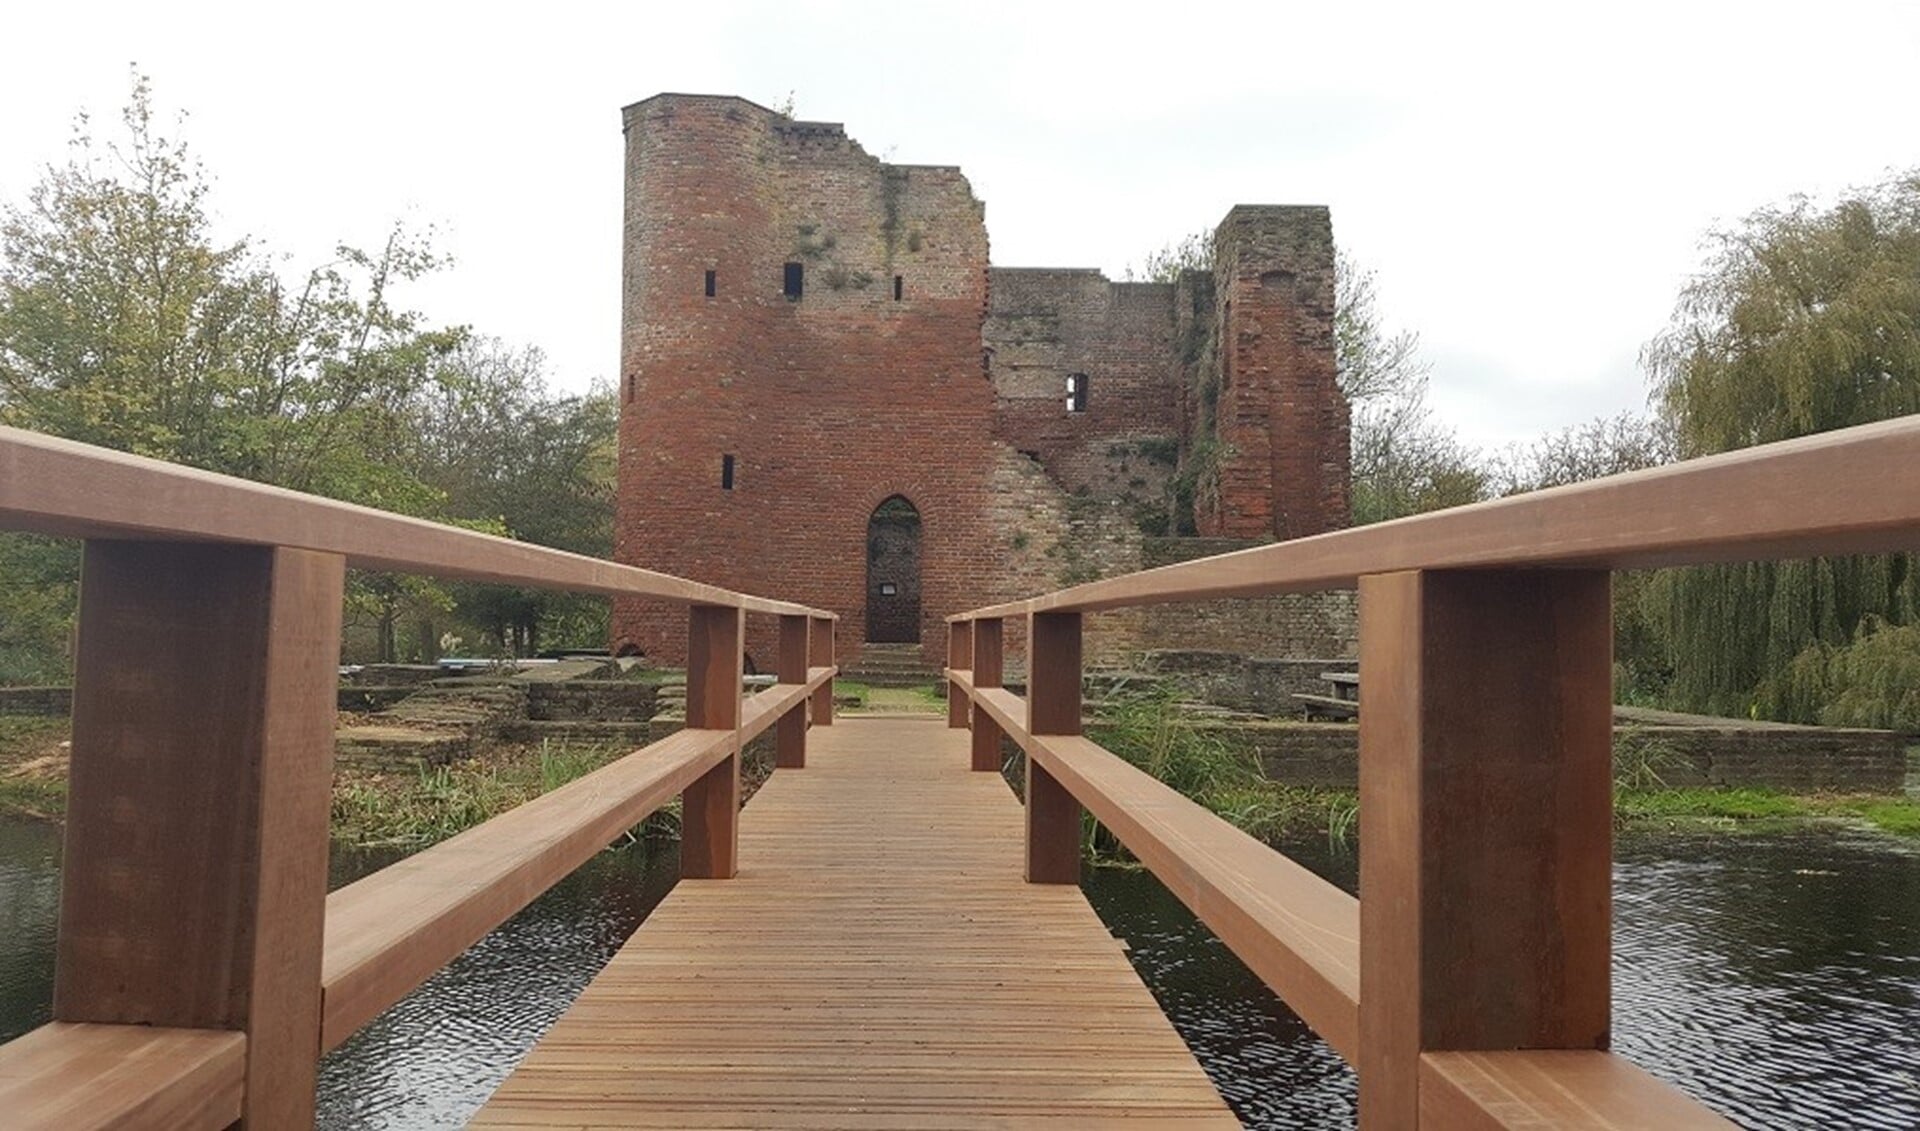 Via een brug bereikt de bezoeker de ruïne. 